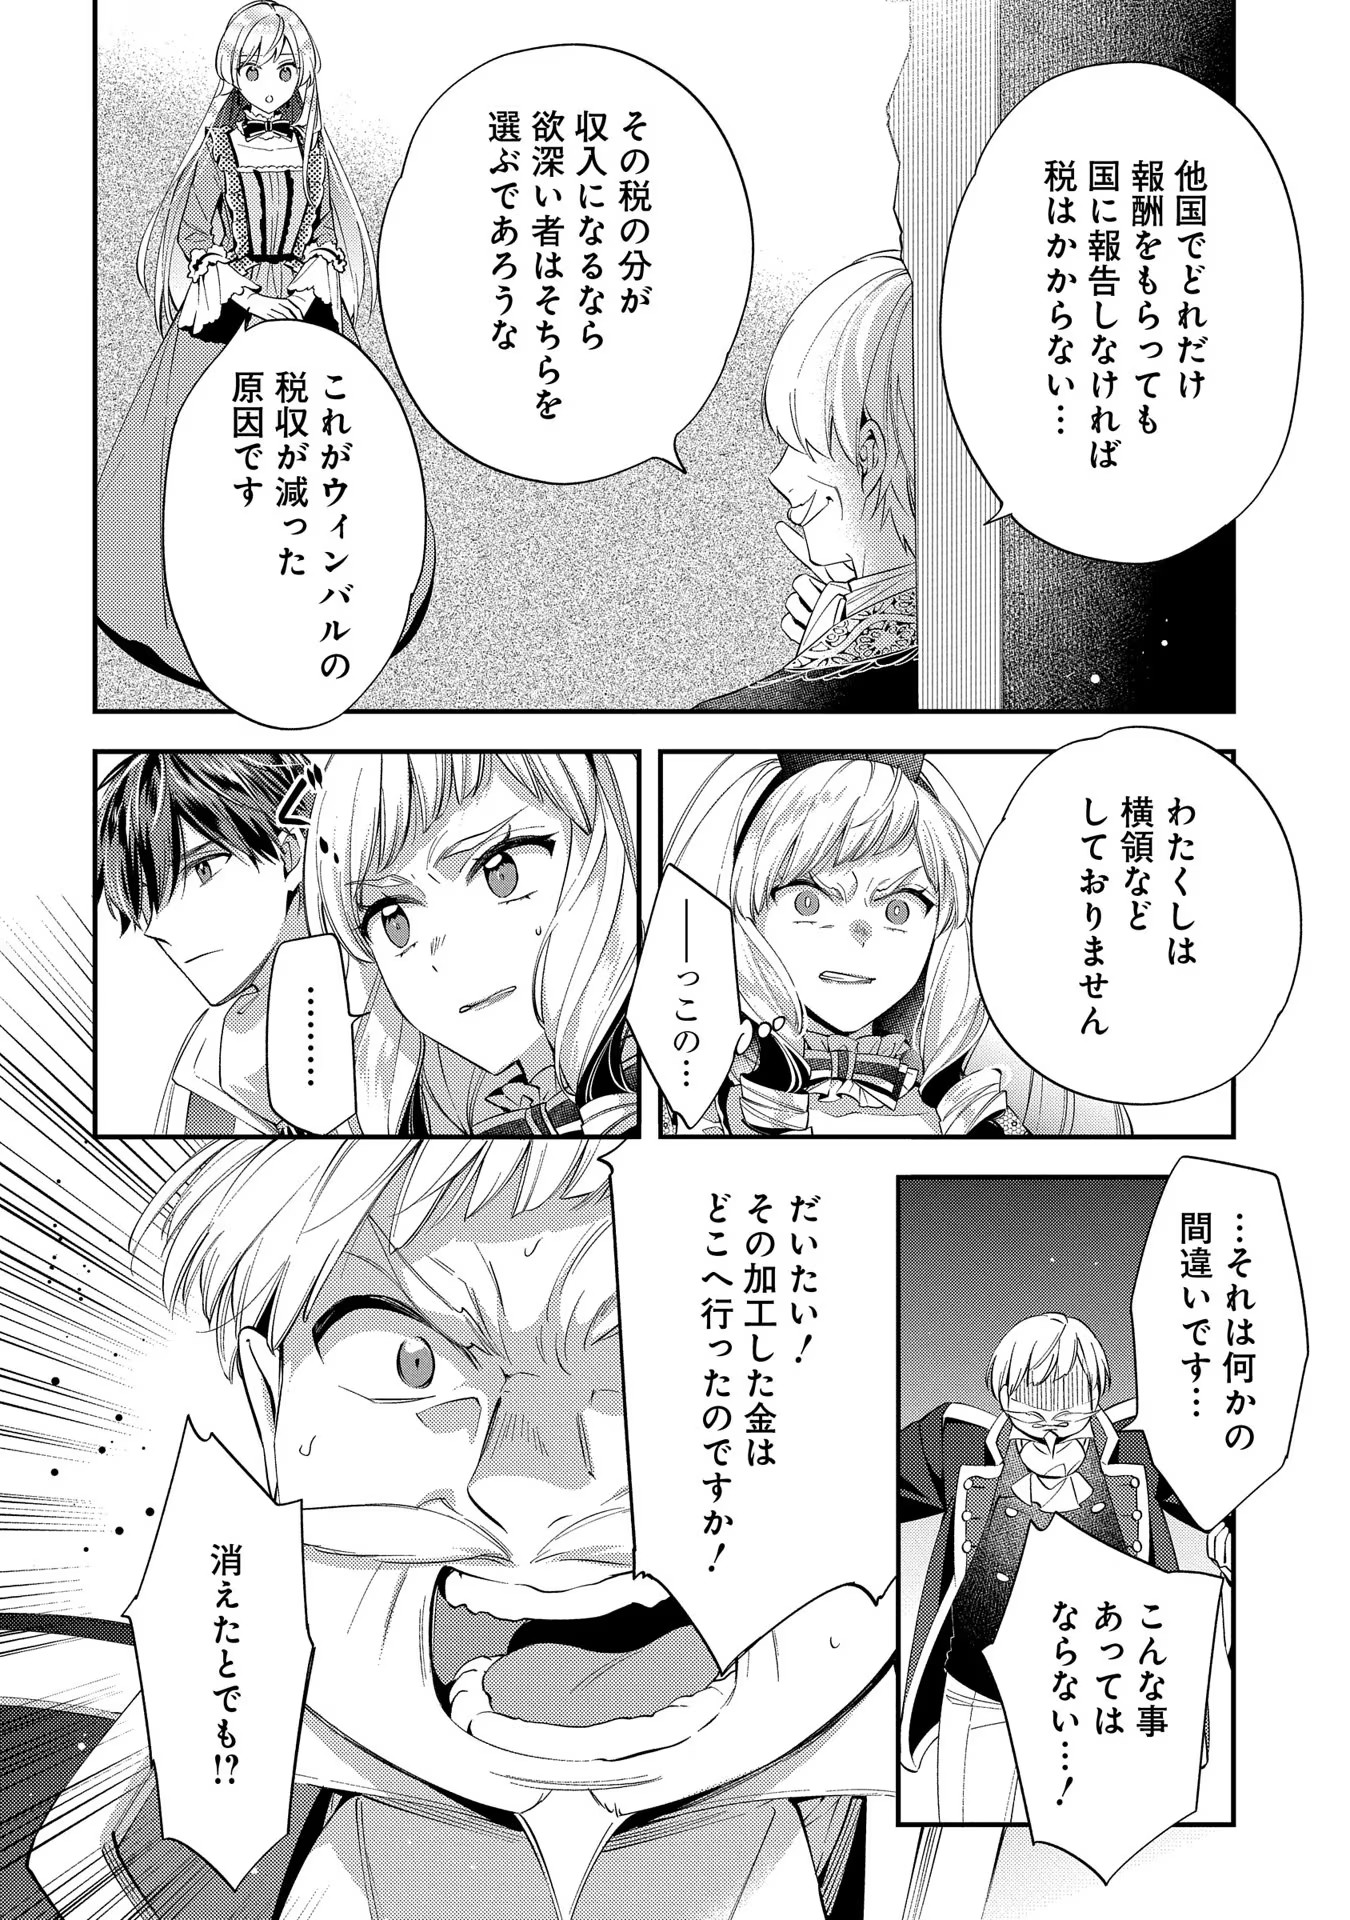 Outaishi ni Konyaku Hakisareta no de, Mou Baka no Furi wa Yameyou to Omoimasu - Chapter 16 - Page 24